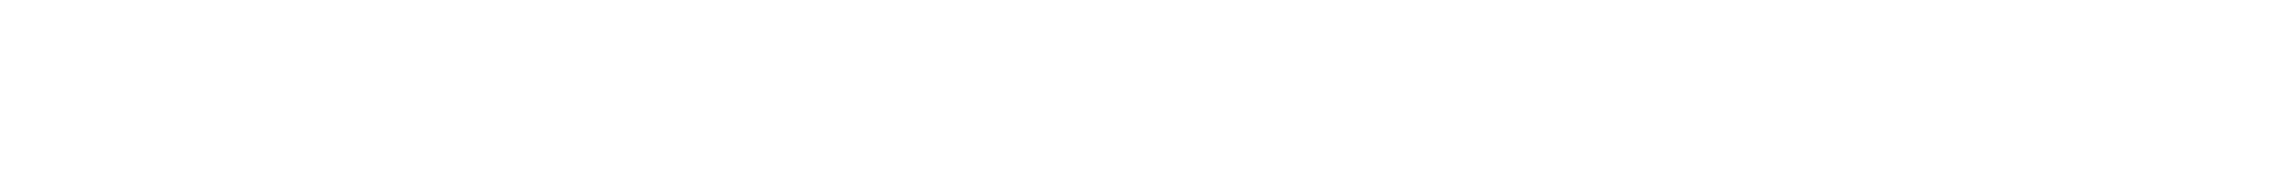 a verder company logo